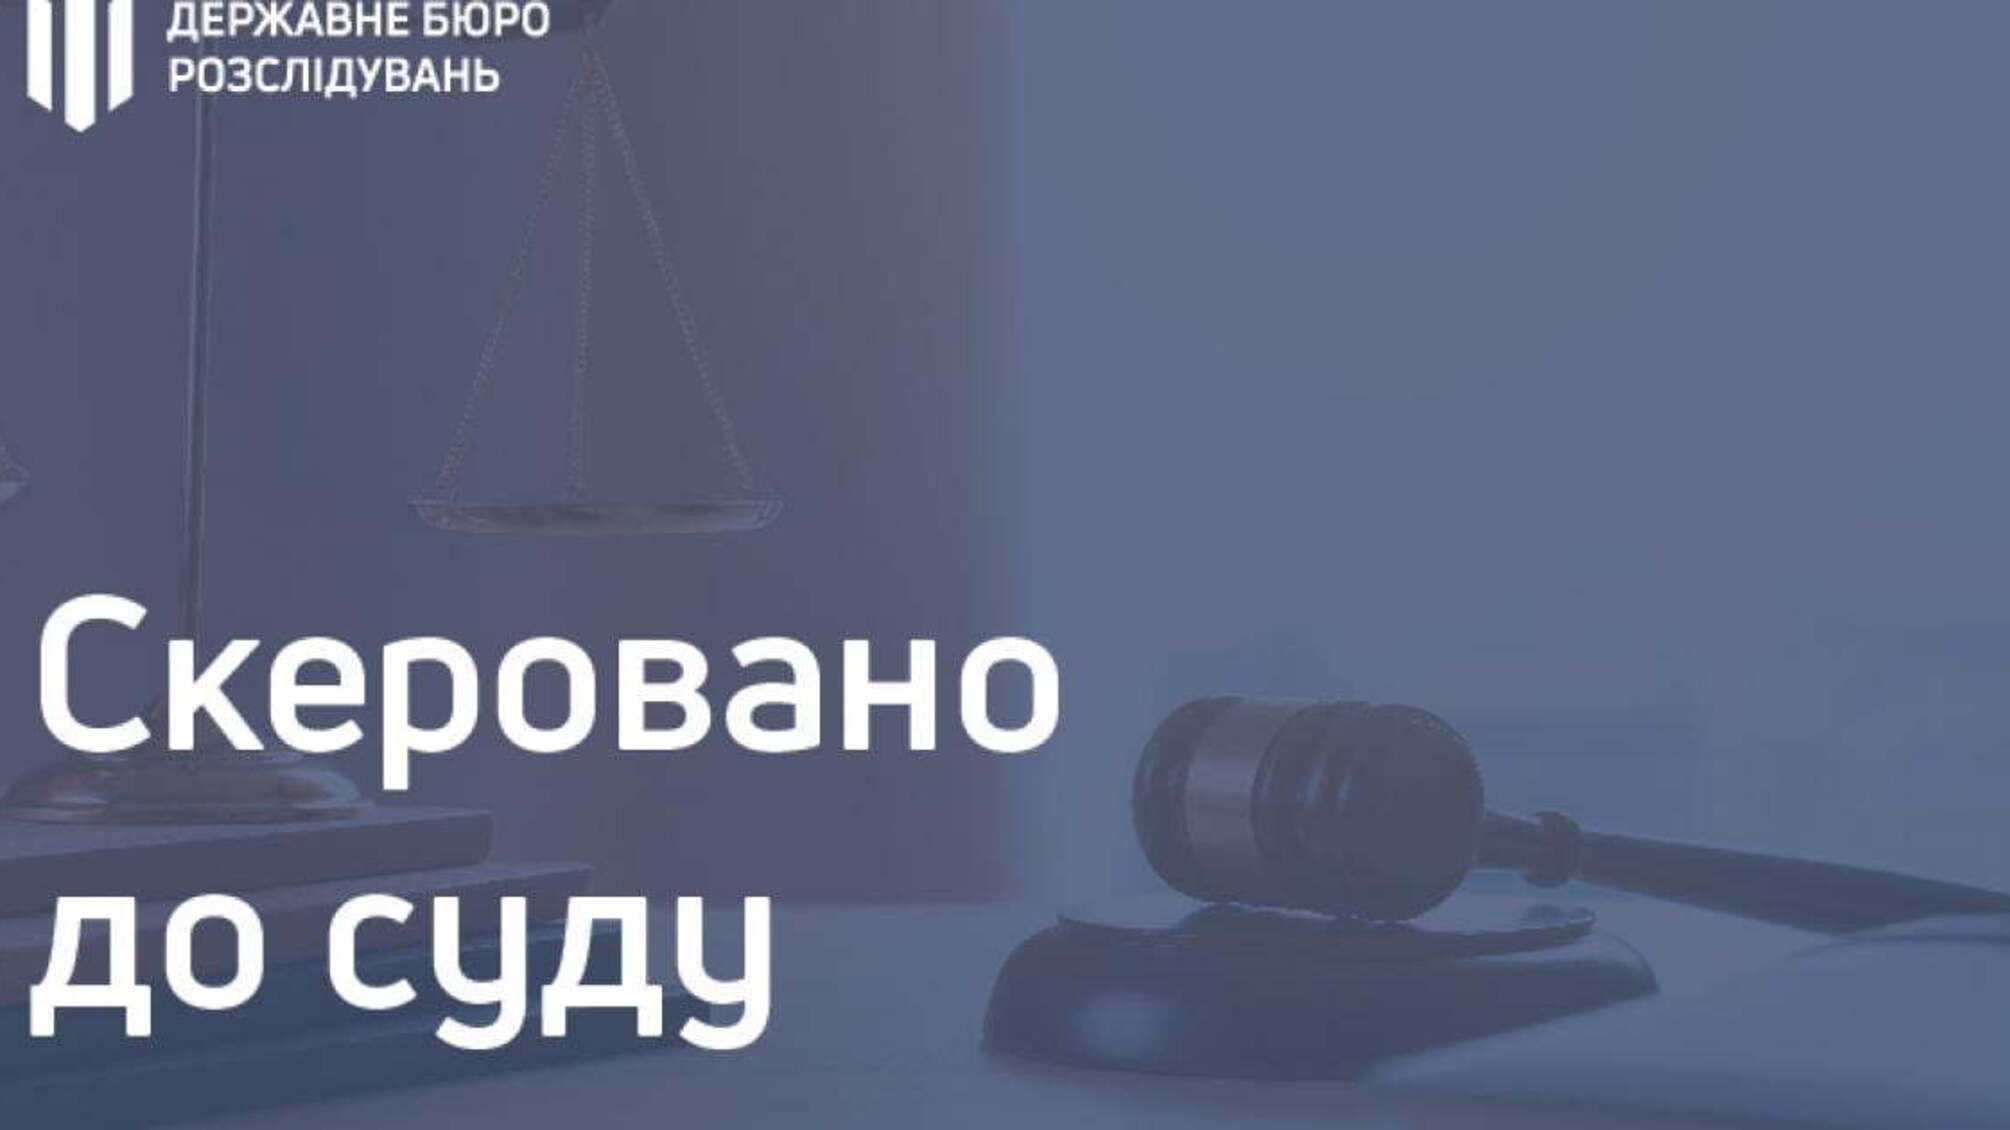 39 000 гривень хабара за вплив на прокурора – поліцейський постане перед судом